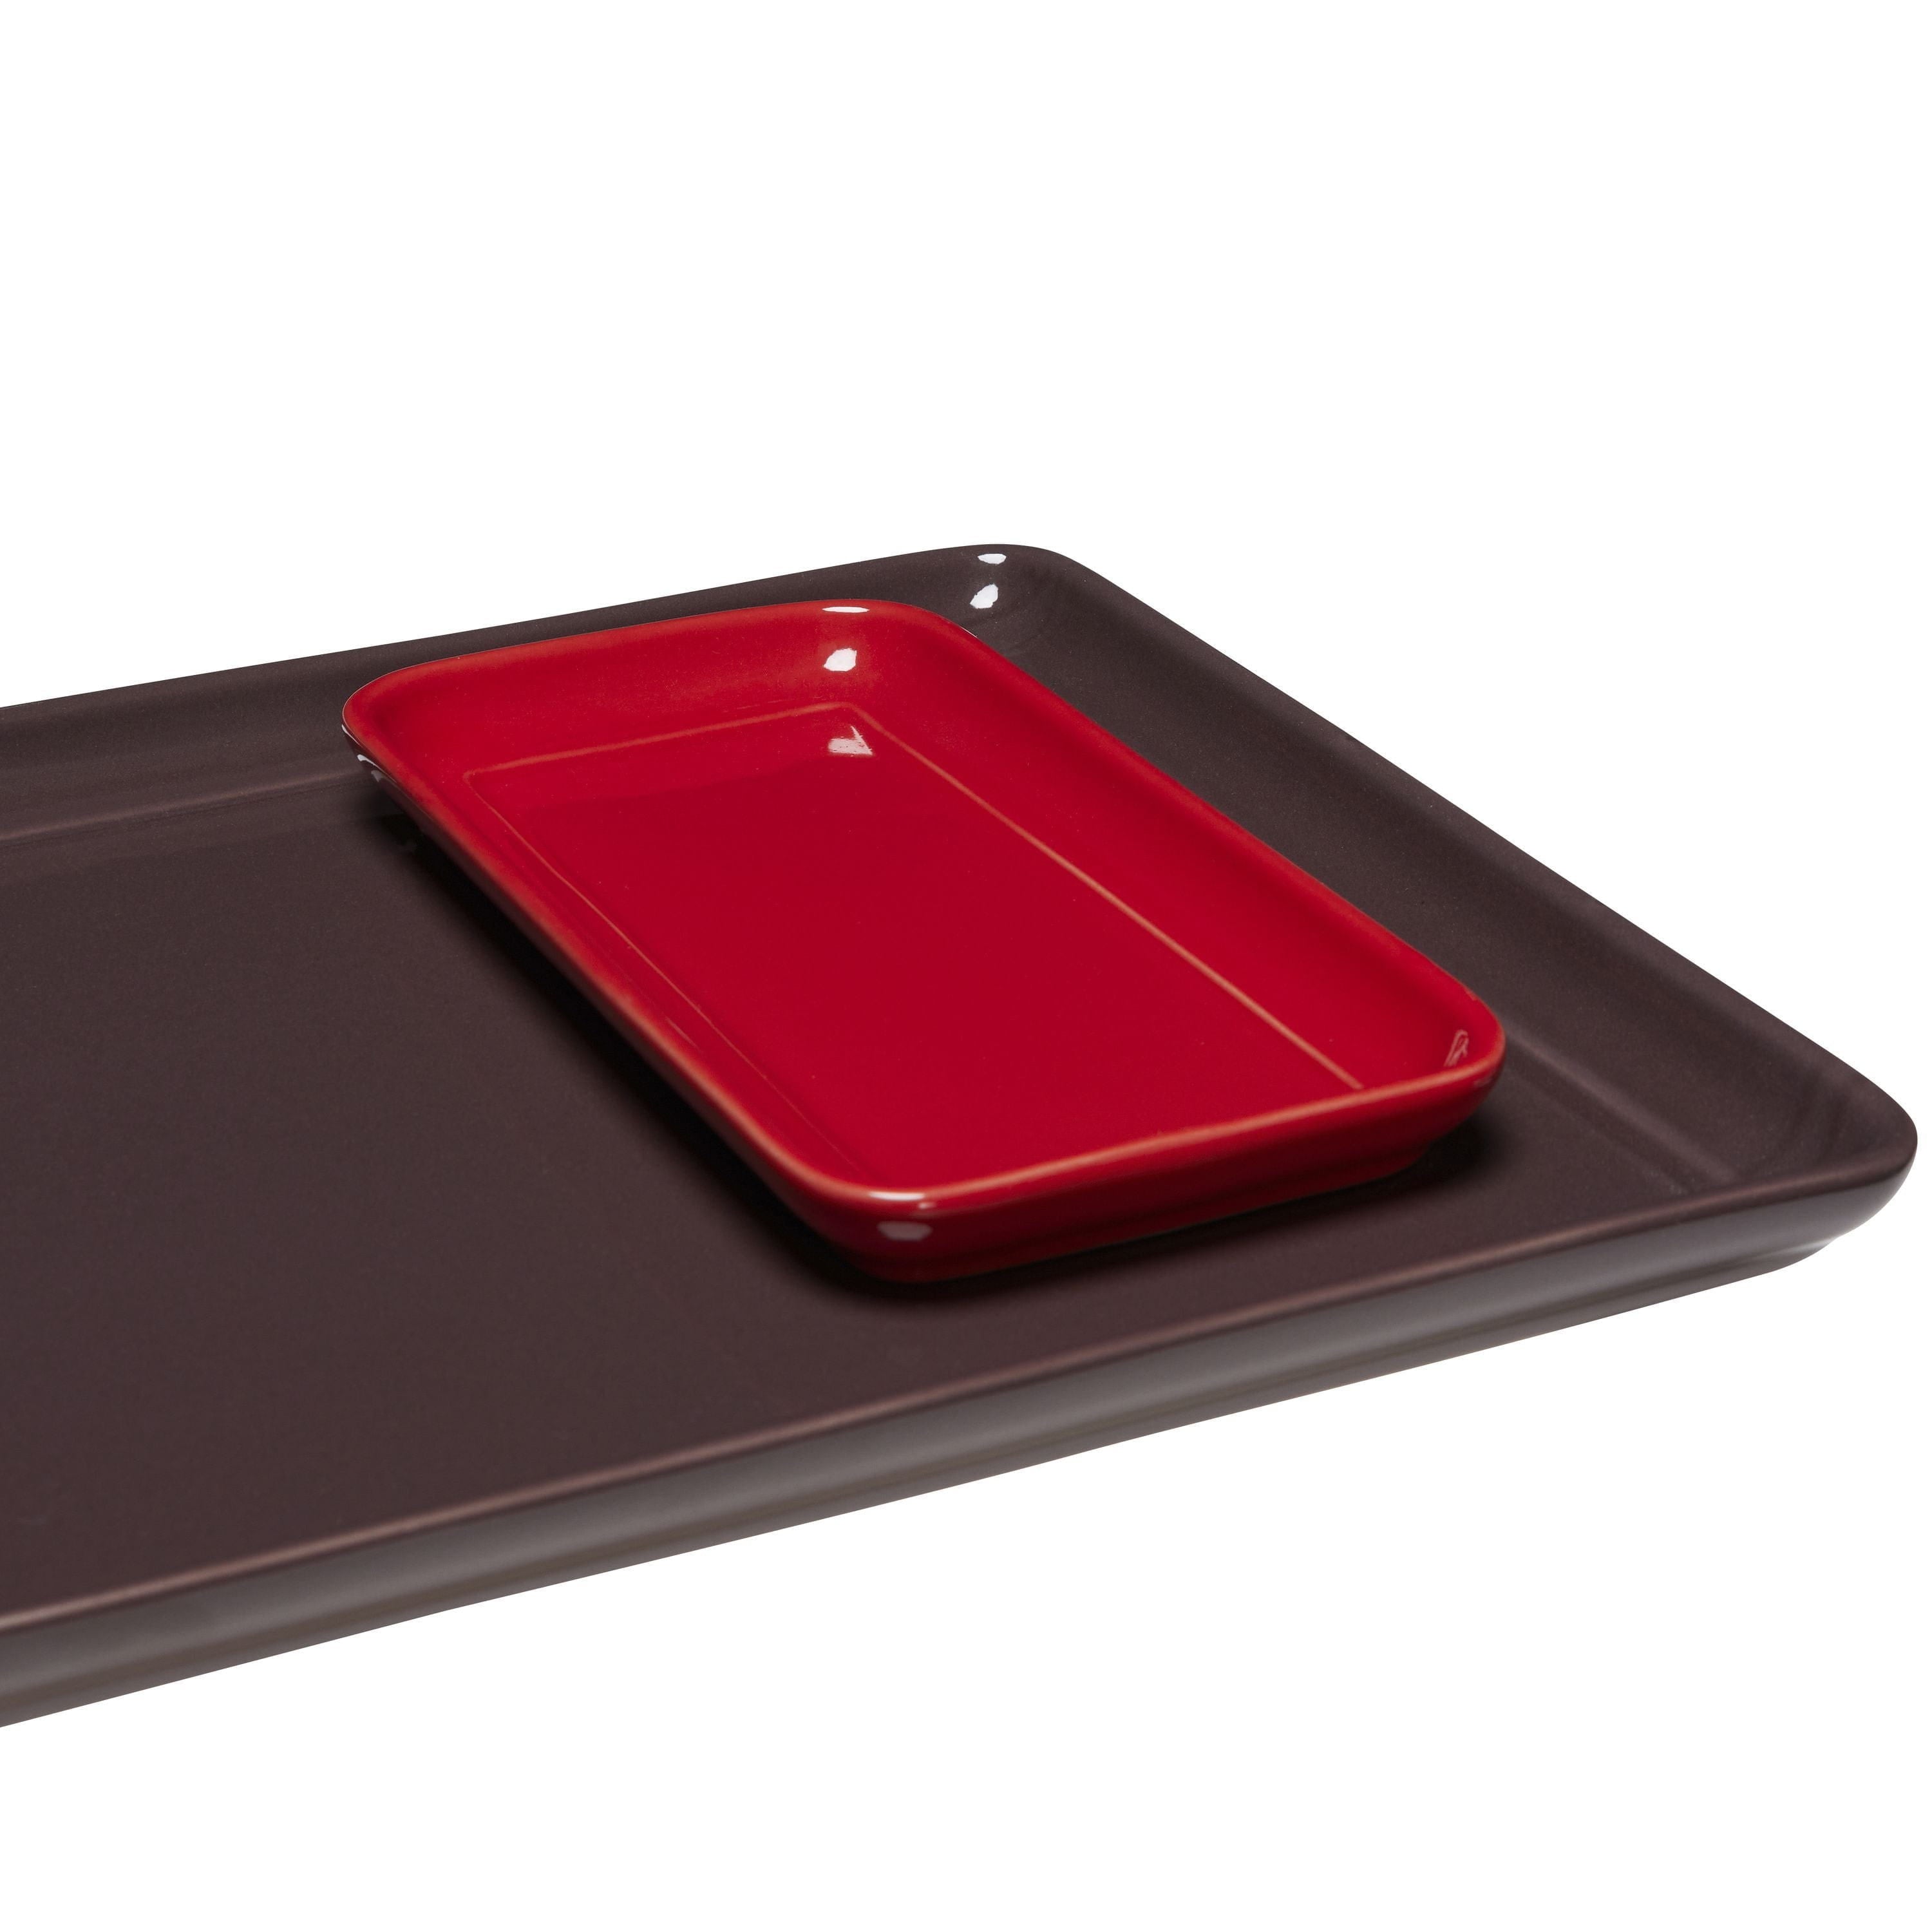 Hübsch Amare Tablett Set de 2, bordeaux / rouge